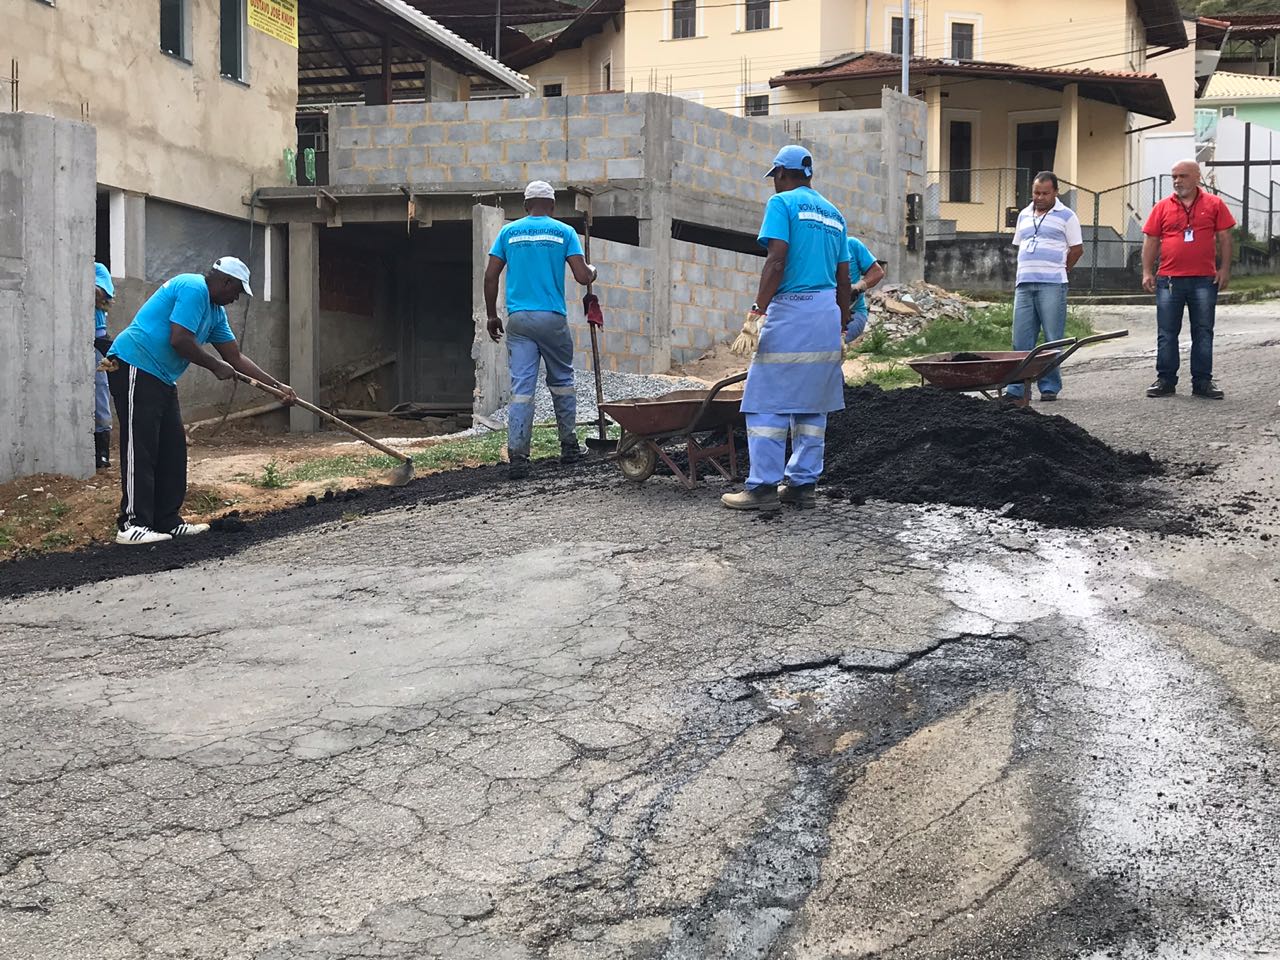 A operação levou novo asfalto a uma via íngreme no Sítio São Luiz onde o risco de acidentes era grande devido aos buracos (Divulgação PMNF)